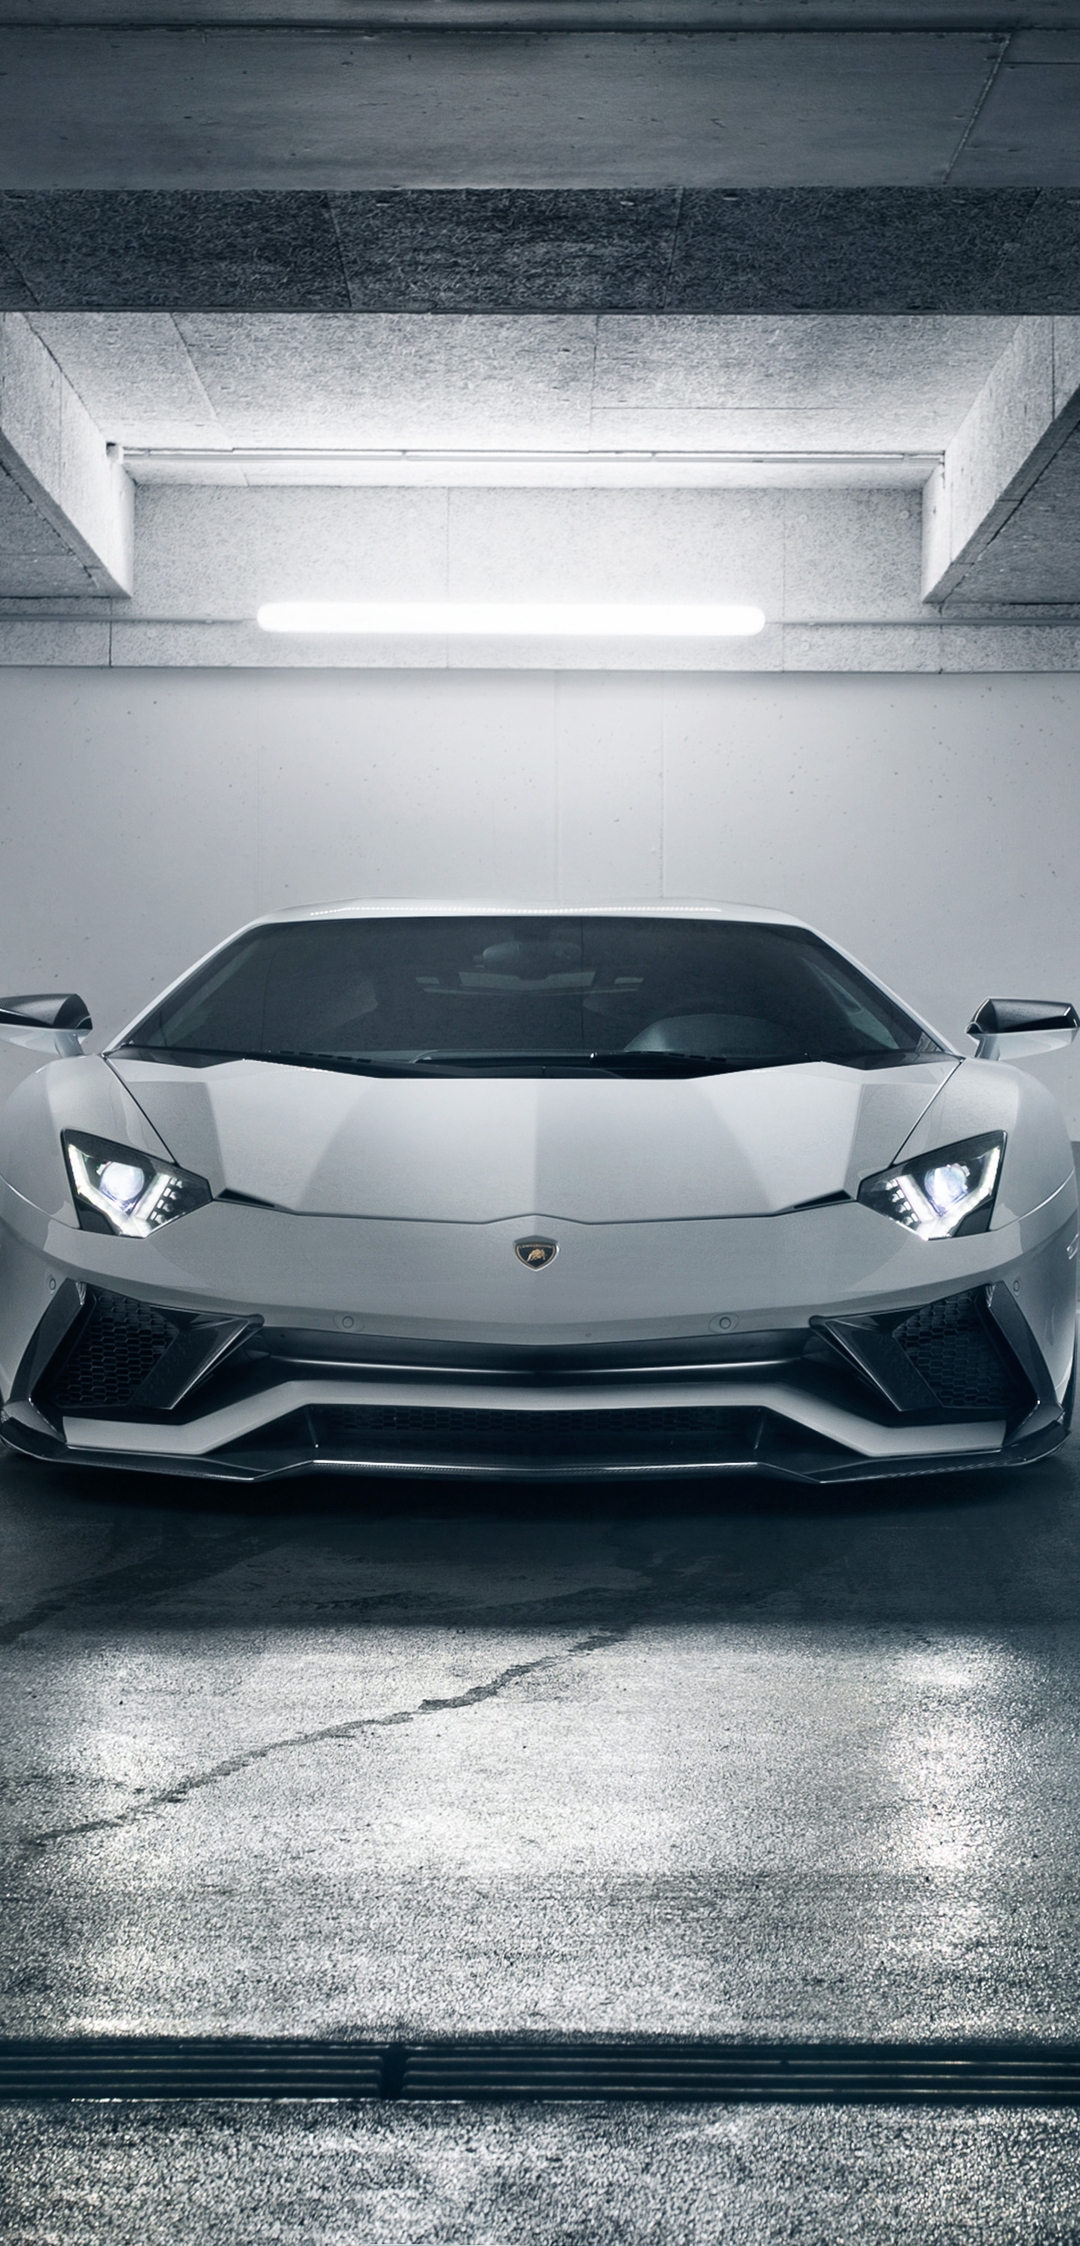 Картинка: Суперкар, Lamborghini Aventador S, парковка, белый, освещение